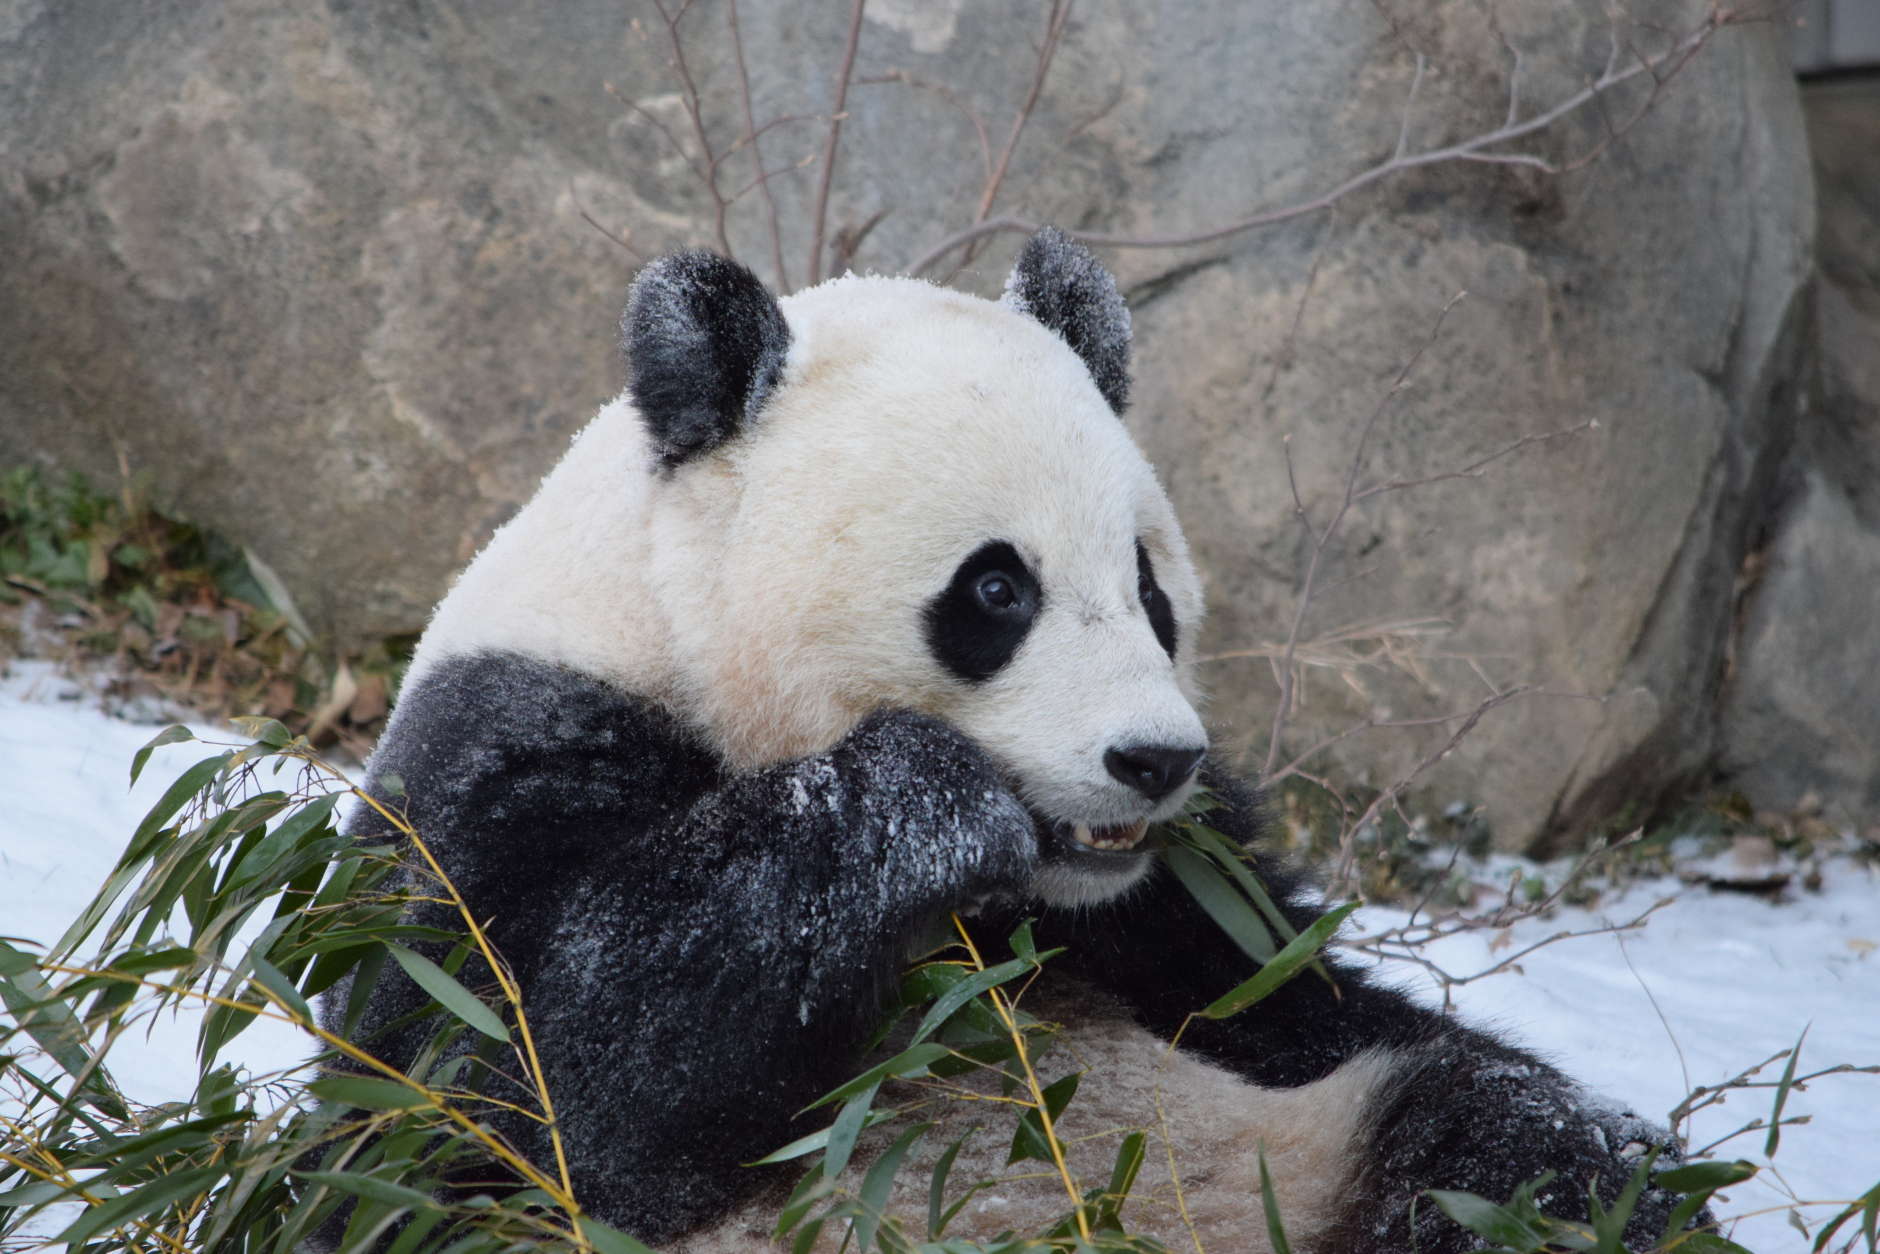 Giant panda Bao Bao in the snow Jan. 21, 2016. (Devin Murphy/Smithsonian's National Zoo)